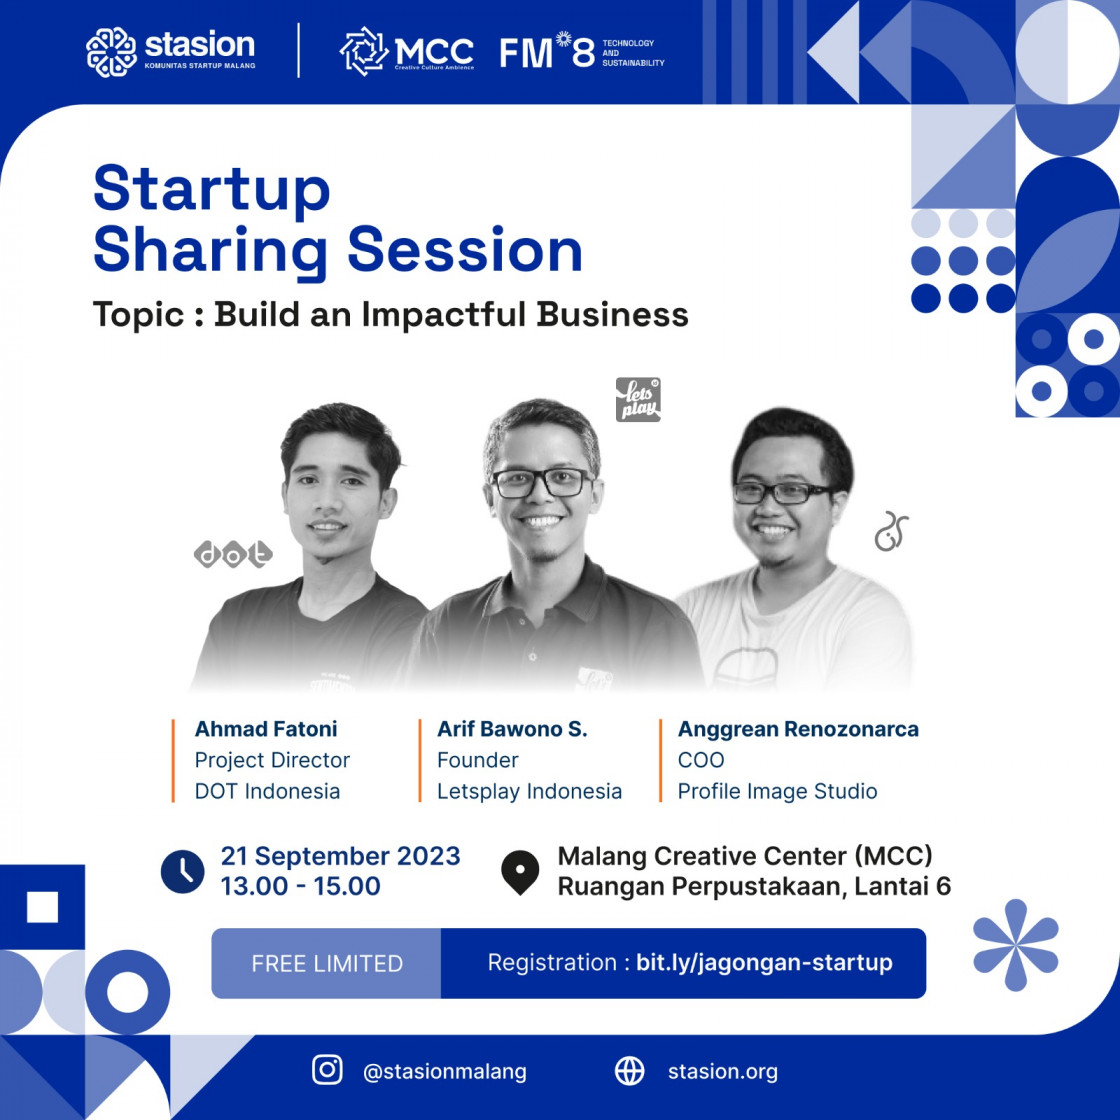 Jagongan Startup Malang-Sharing Session : Build an Impactful Business